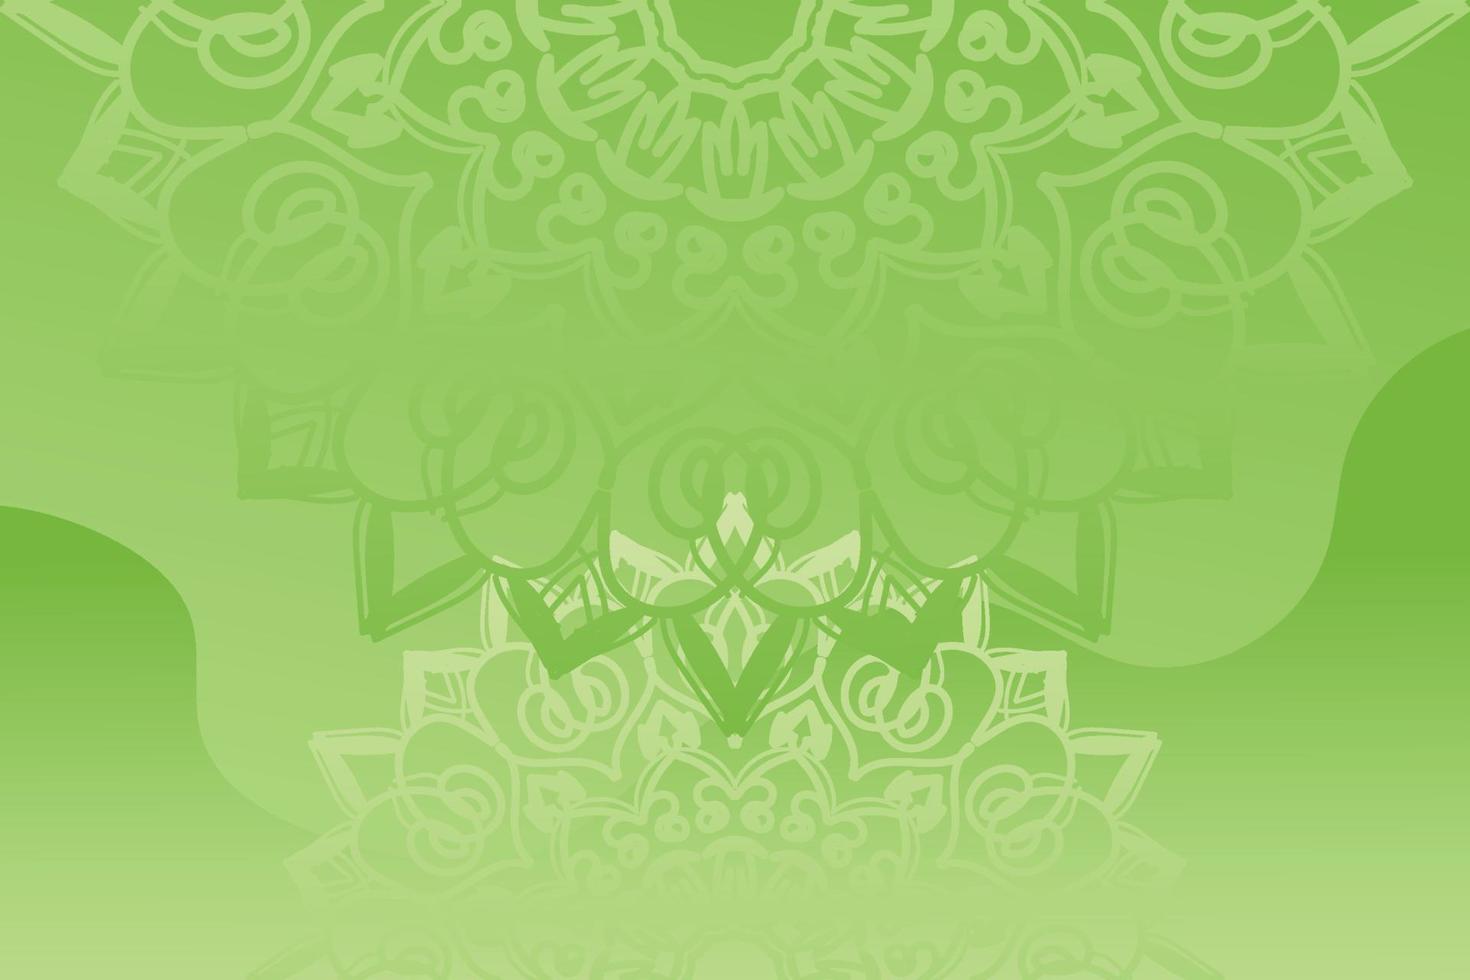 schöne Vektor handgezeichnete indische Ornament Mandala auf Hintergrundstil.